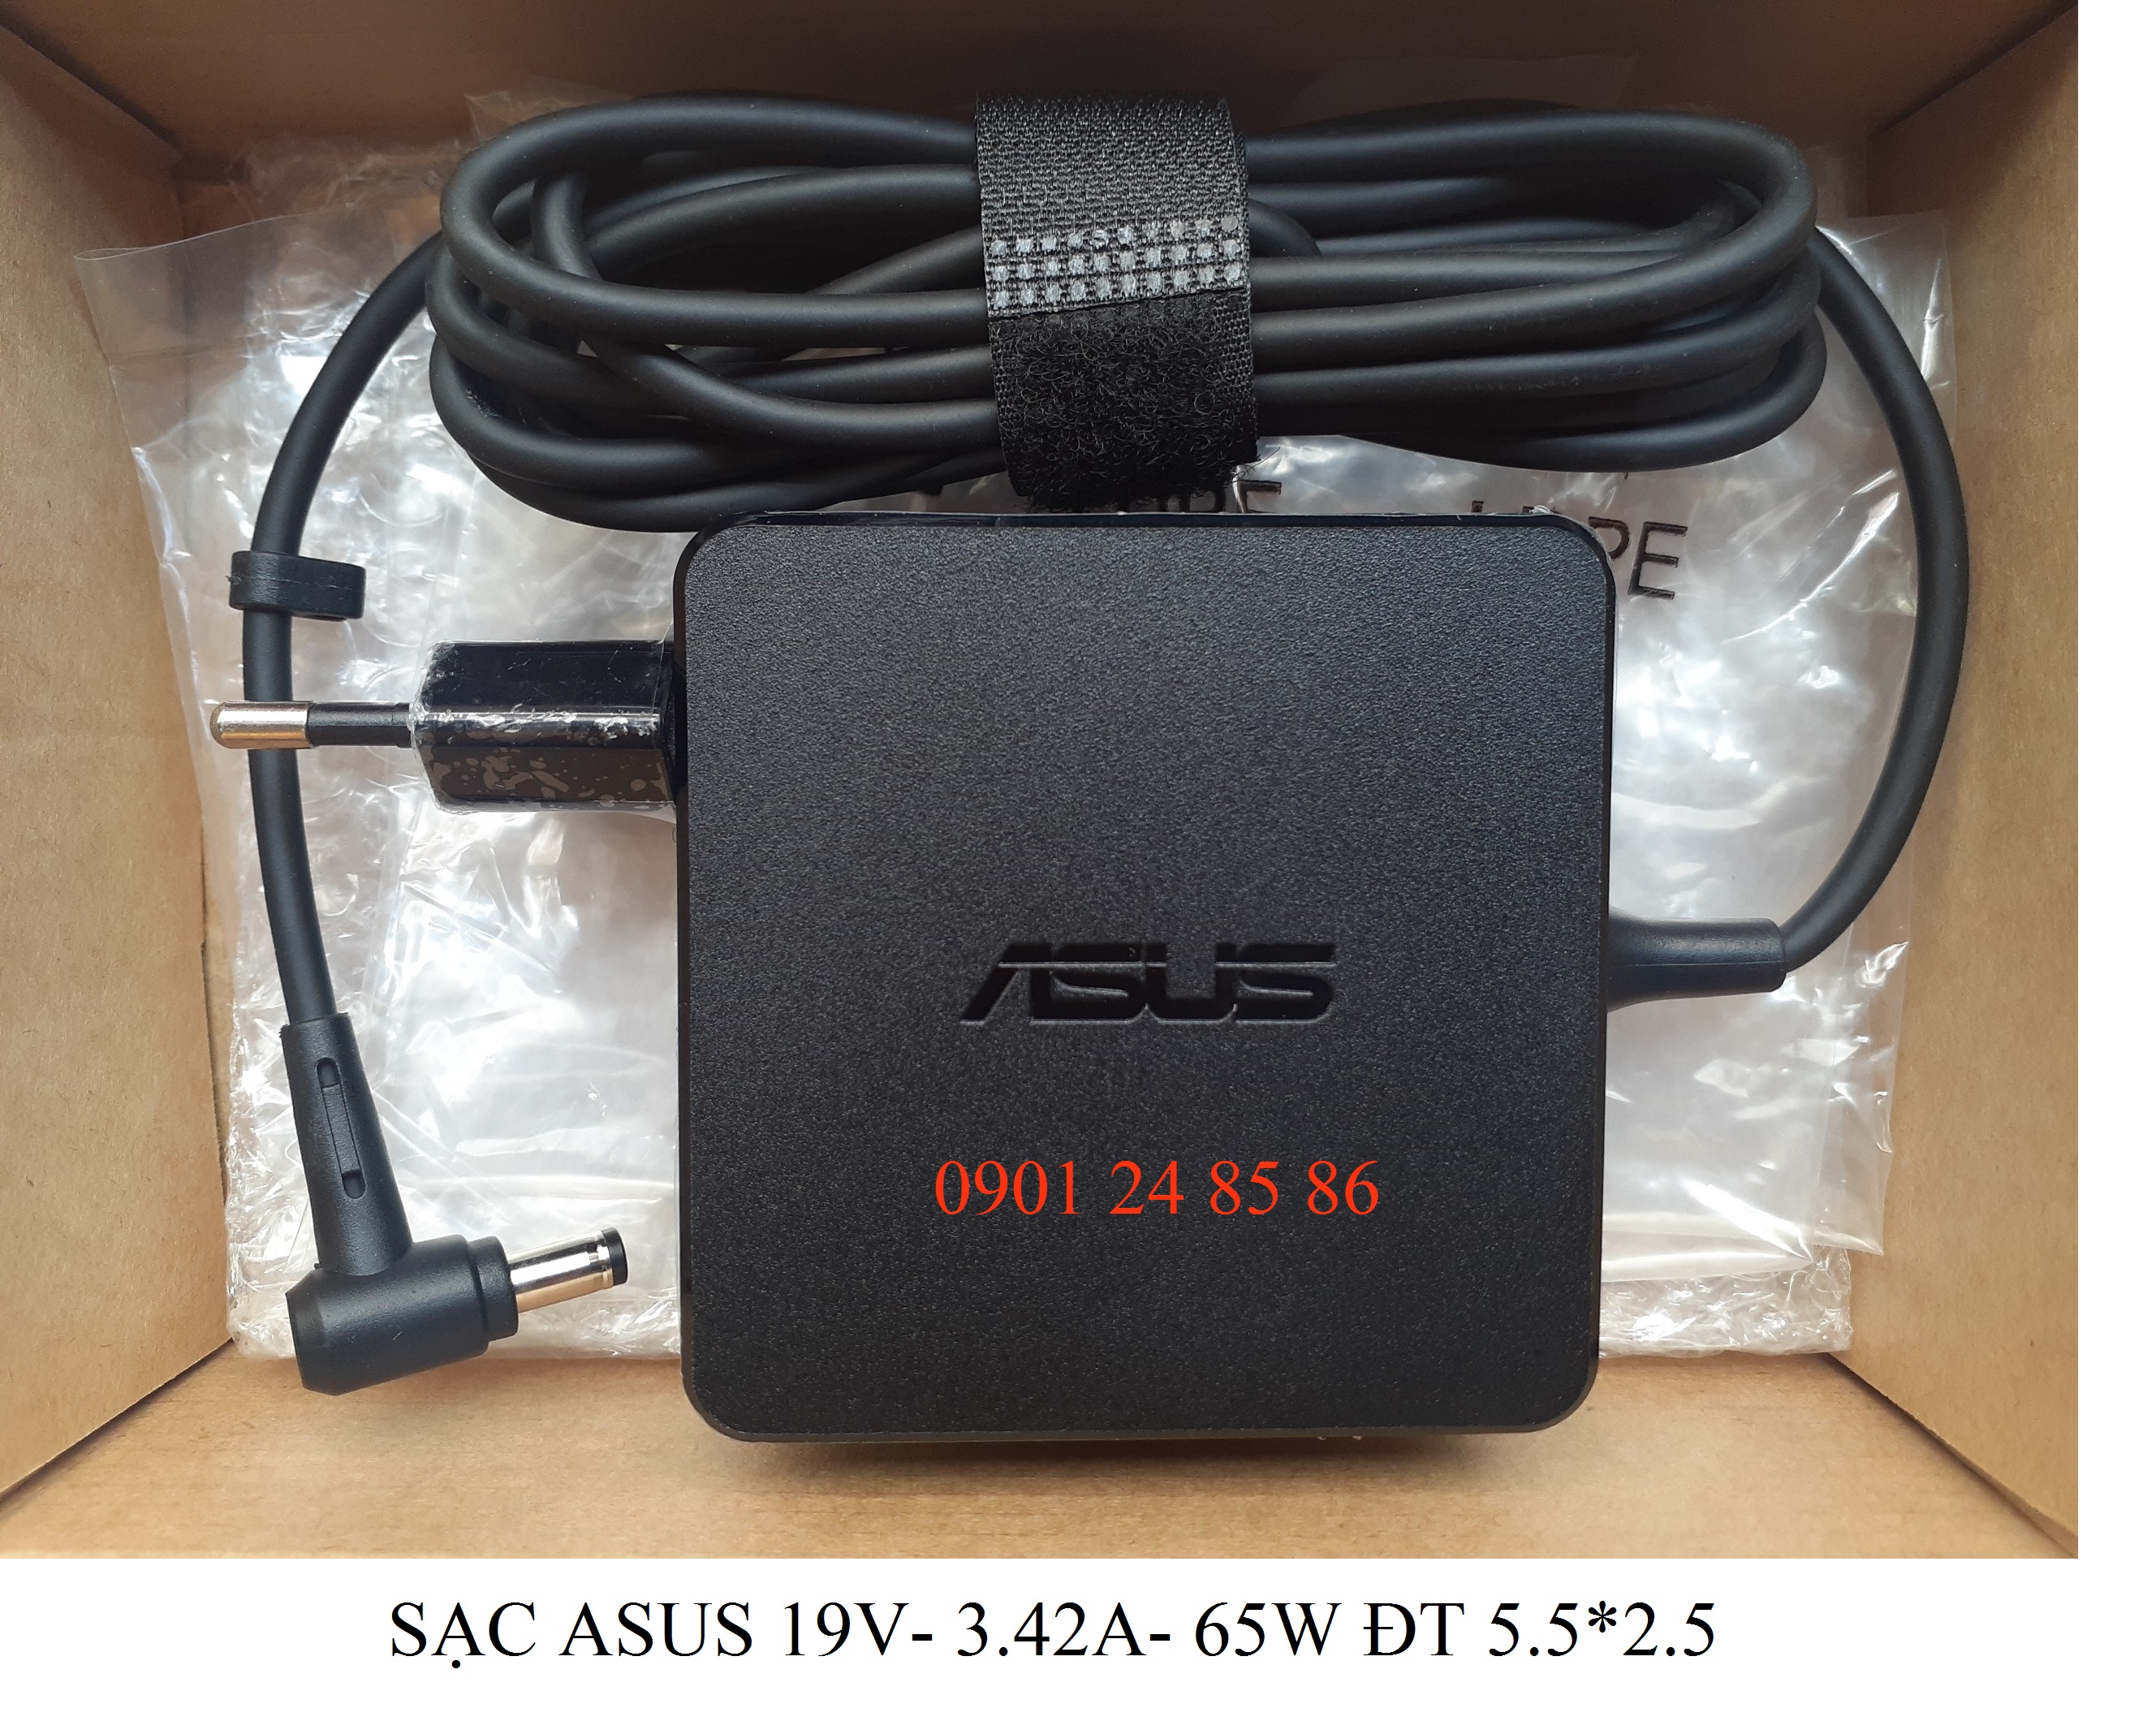 Sạc Laptop Asus, Sạc Asus, Adapter Laptop Asus Original, Asus VivoBook K451/ V451LN/ V451LA/ V451LA-DS51T/ S451LA - Asus 19V-3.42A-65W 5.5MM*2.5MM ADP-65DW B